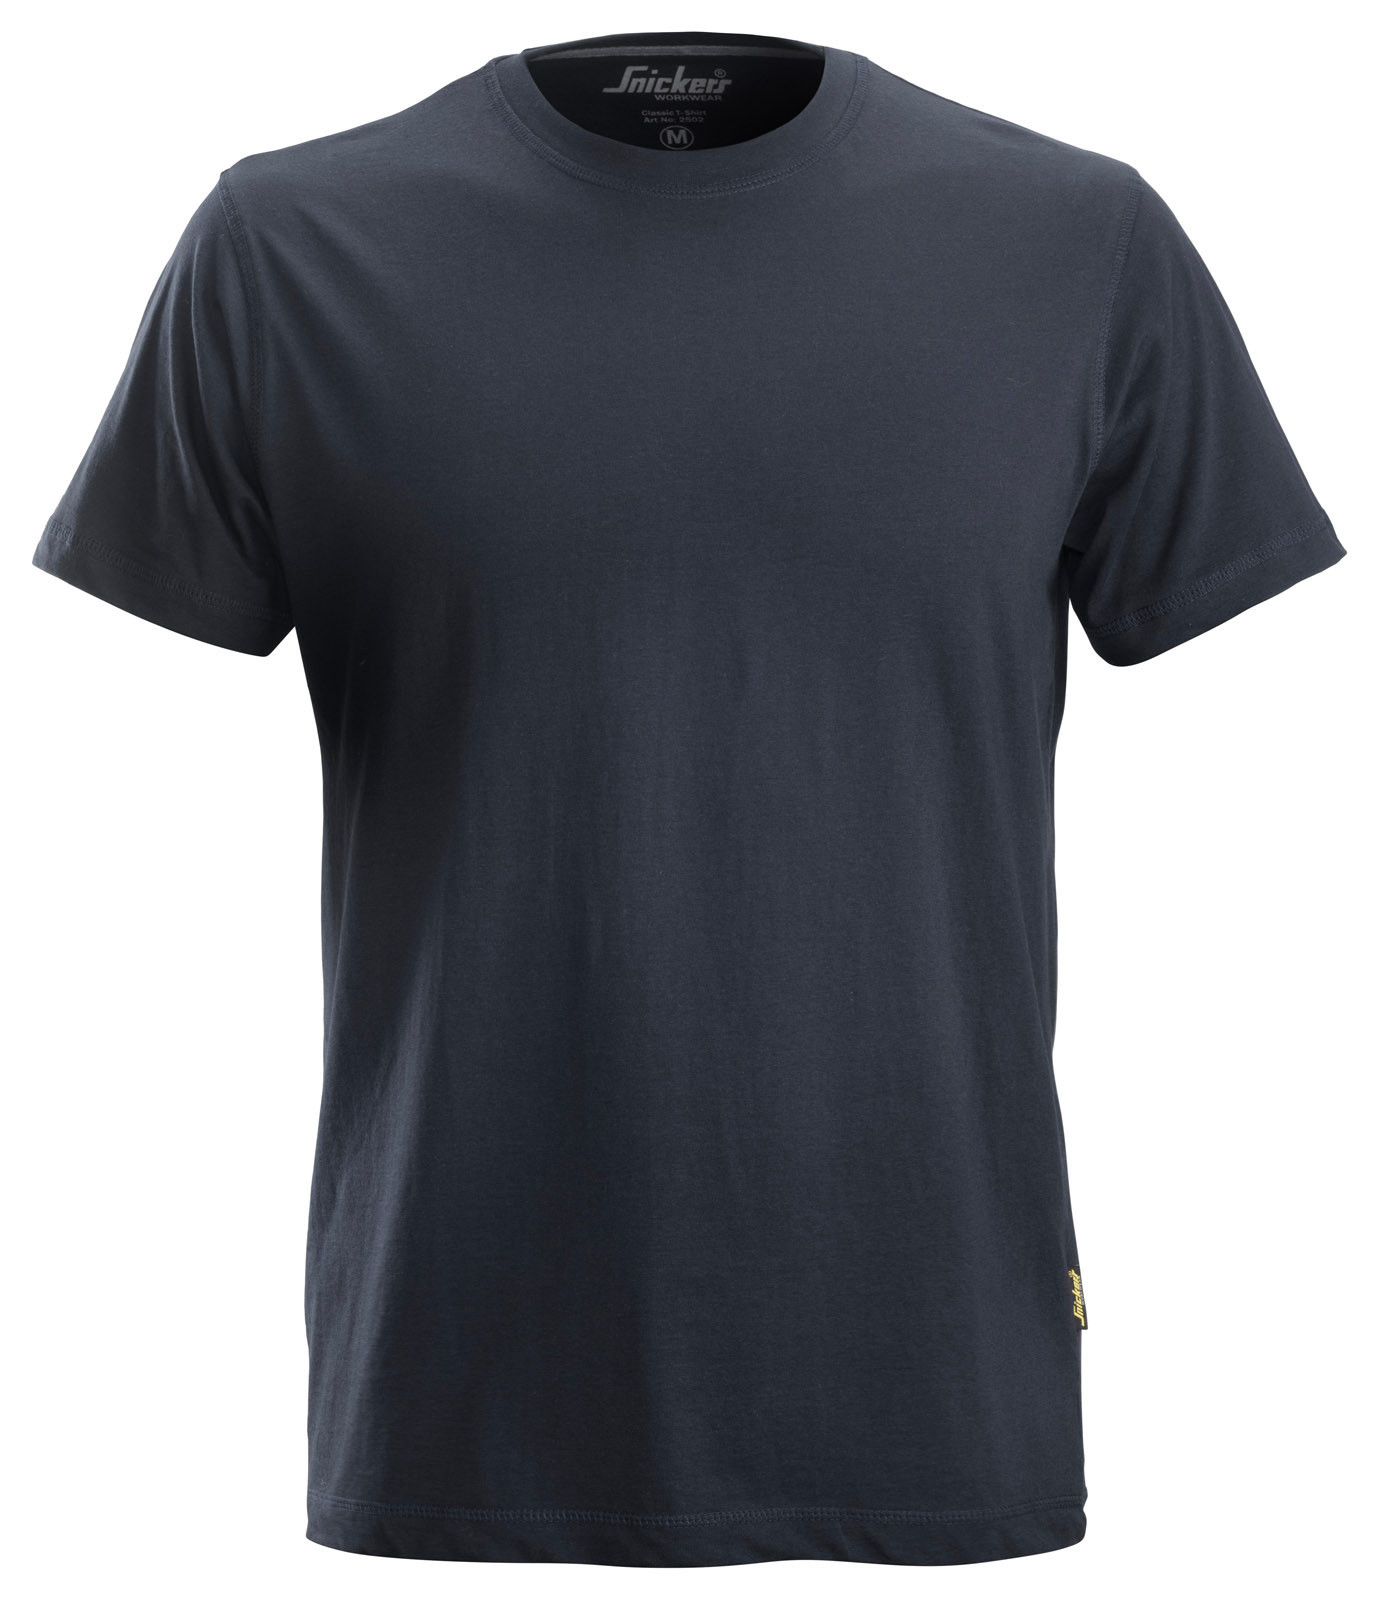 Pracovné tričko Snickers® Classic - veľkosť: XL, farba: navy